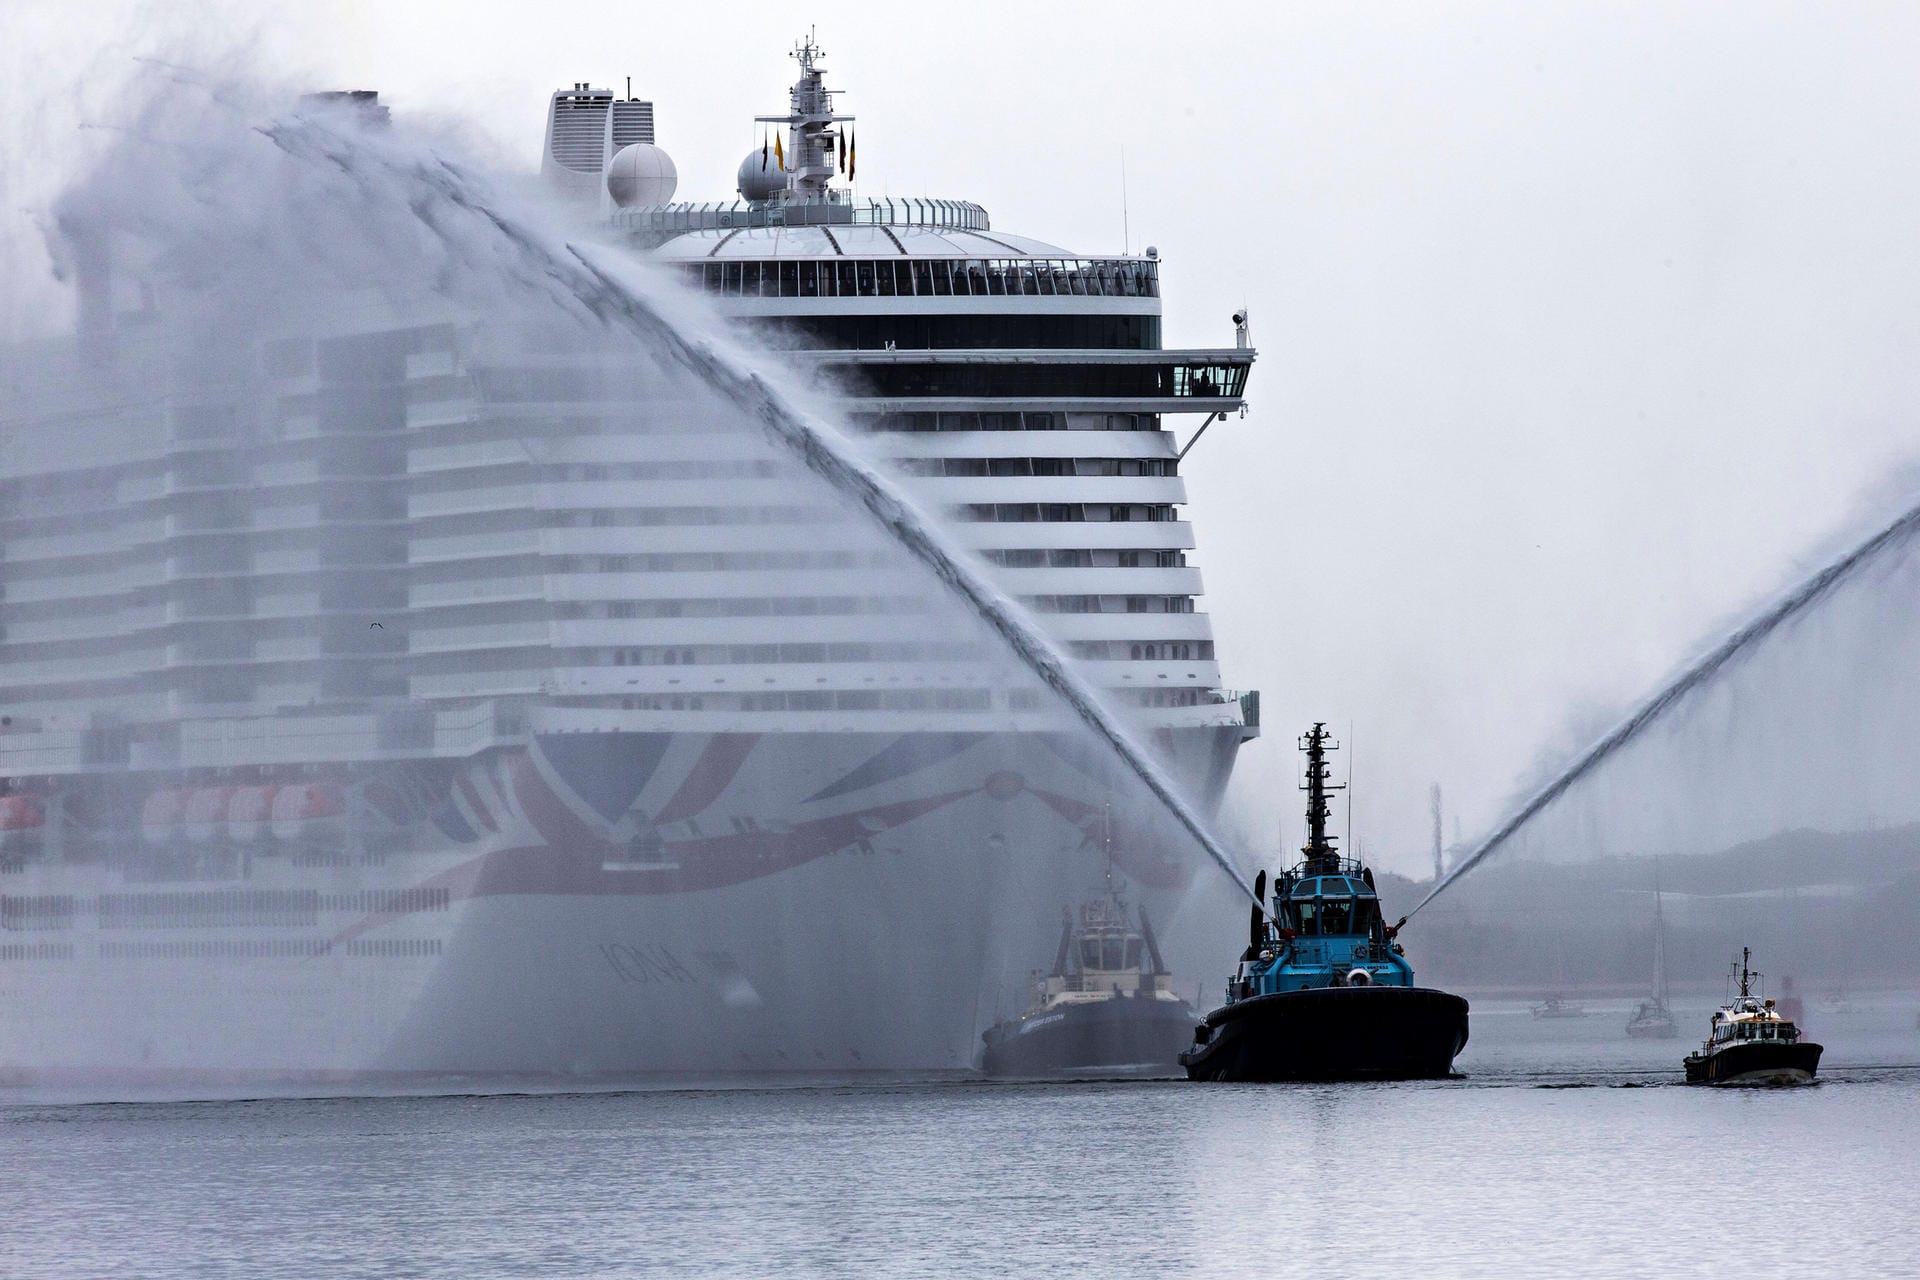 Wasserwerfer begleiten die MS Iona auf ihrem Weg in einen Hafen. Sie ist das größte bisher gebaute Kreuzfahrtschiff der Welt. 5.206 Passagiere finden Platz auf dem Luxus-Liner. Am 4. April ist das Schiff auch in Hamburg zu Gast.